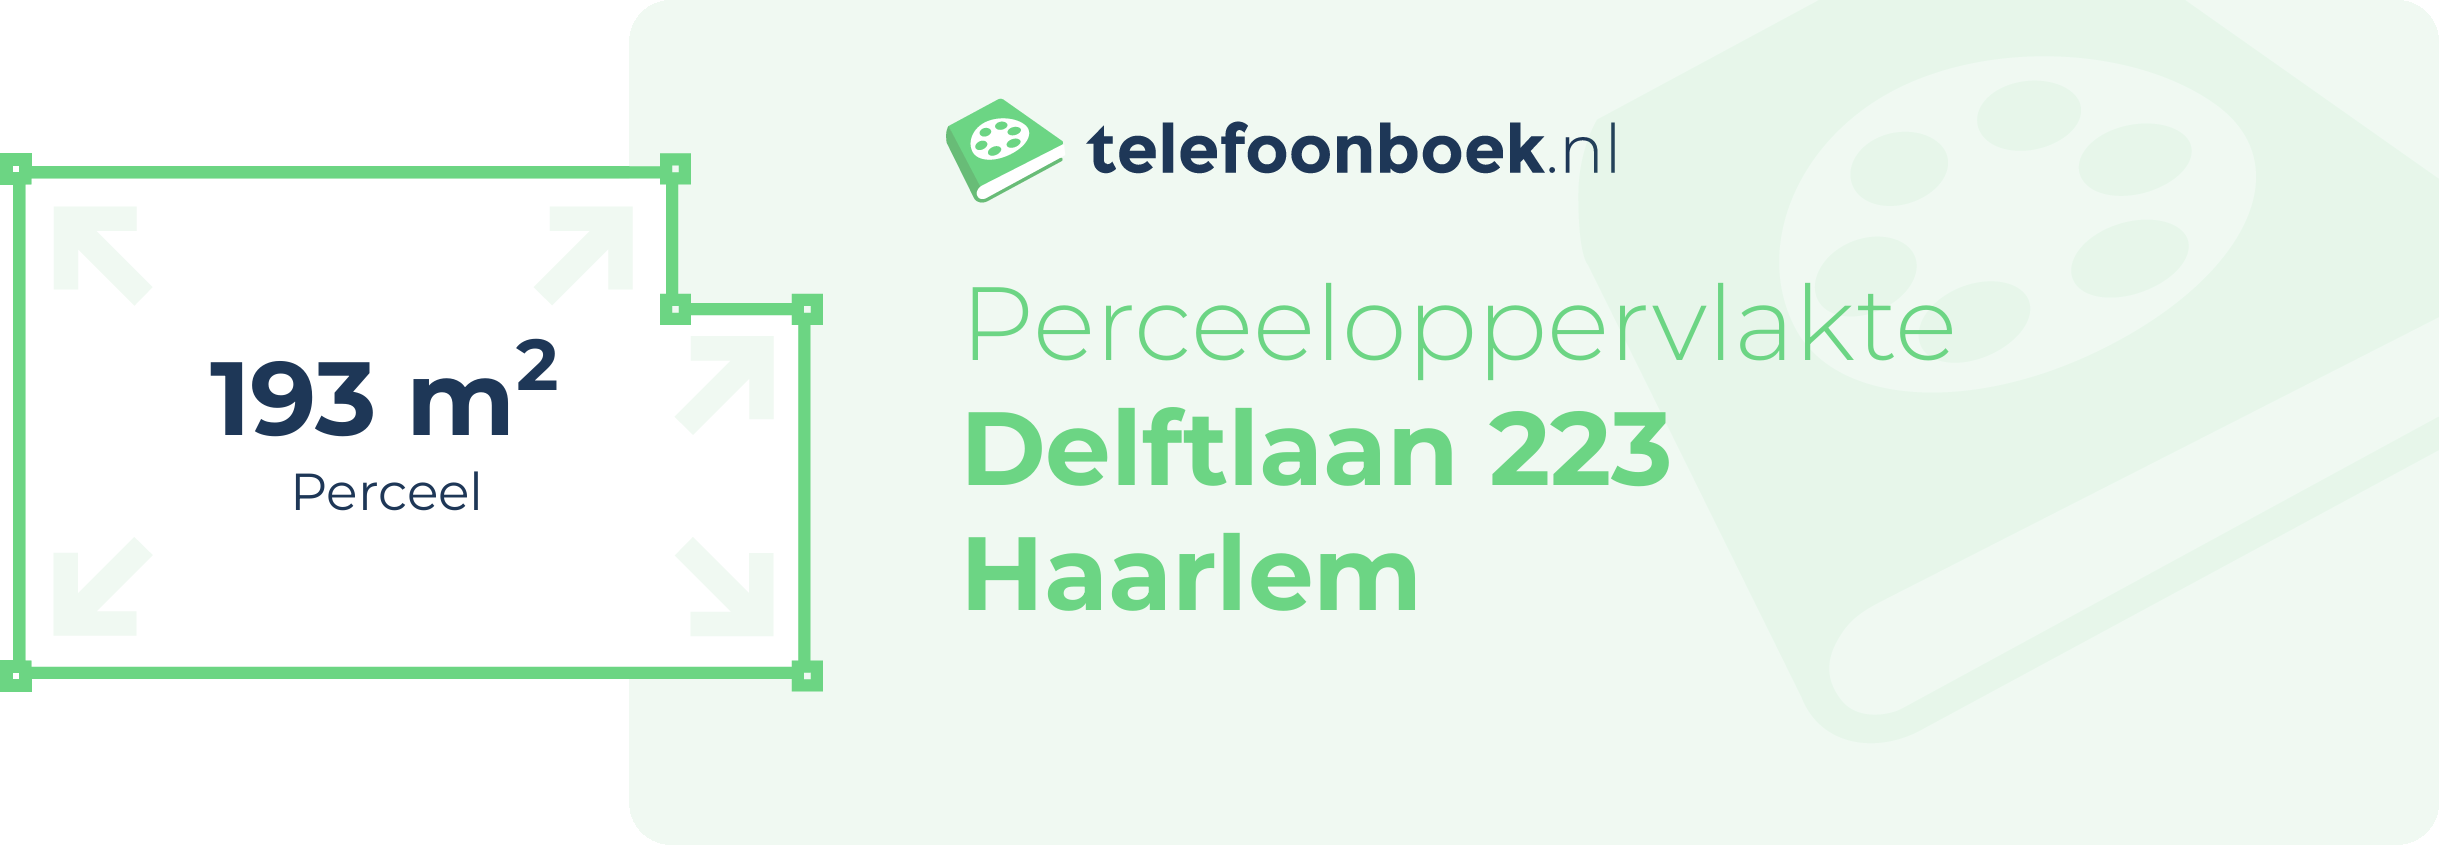 Perceeloppervlakte Delftlaan 223 Haarlem